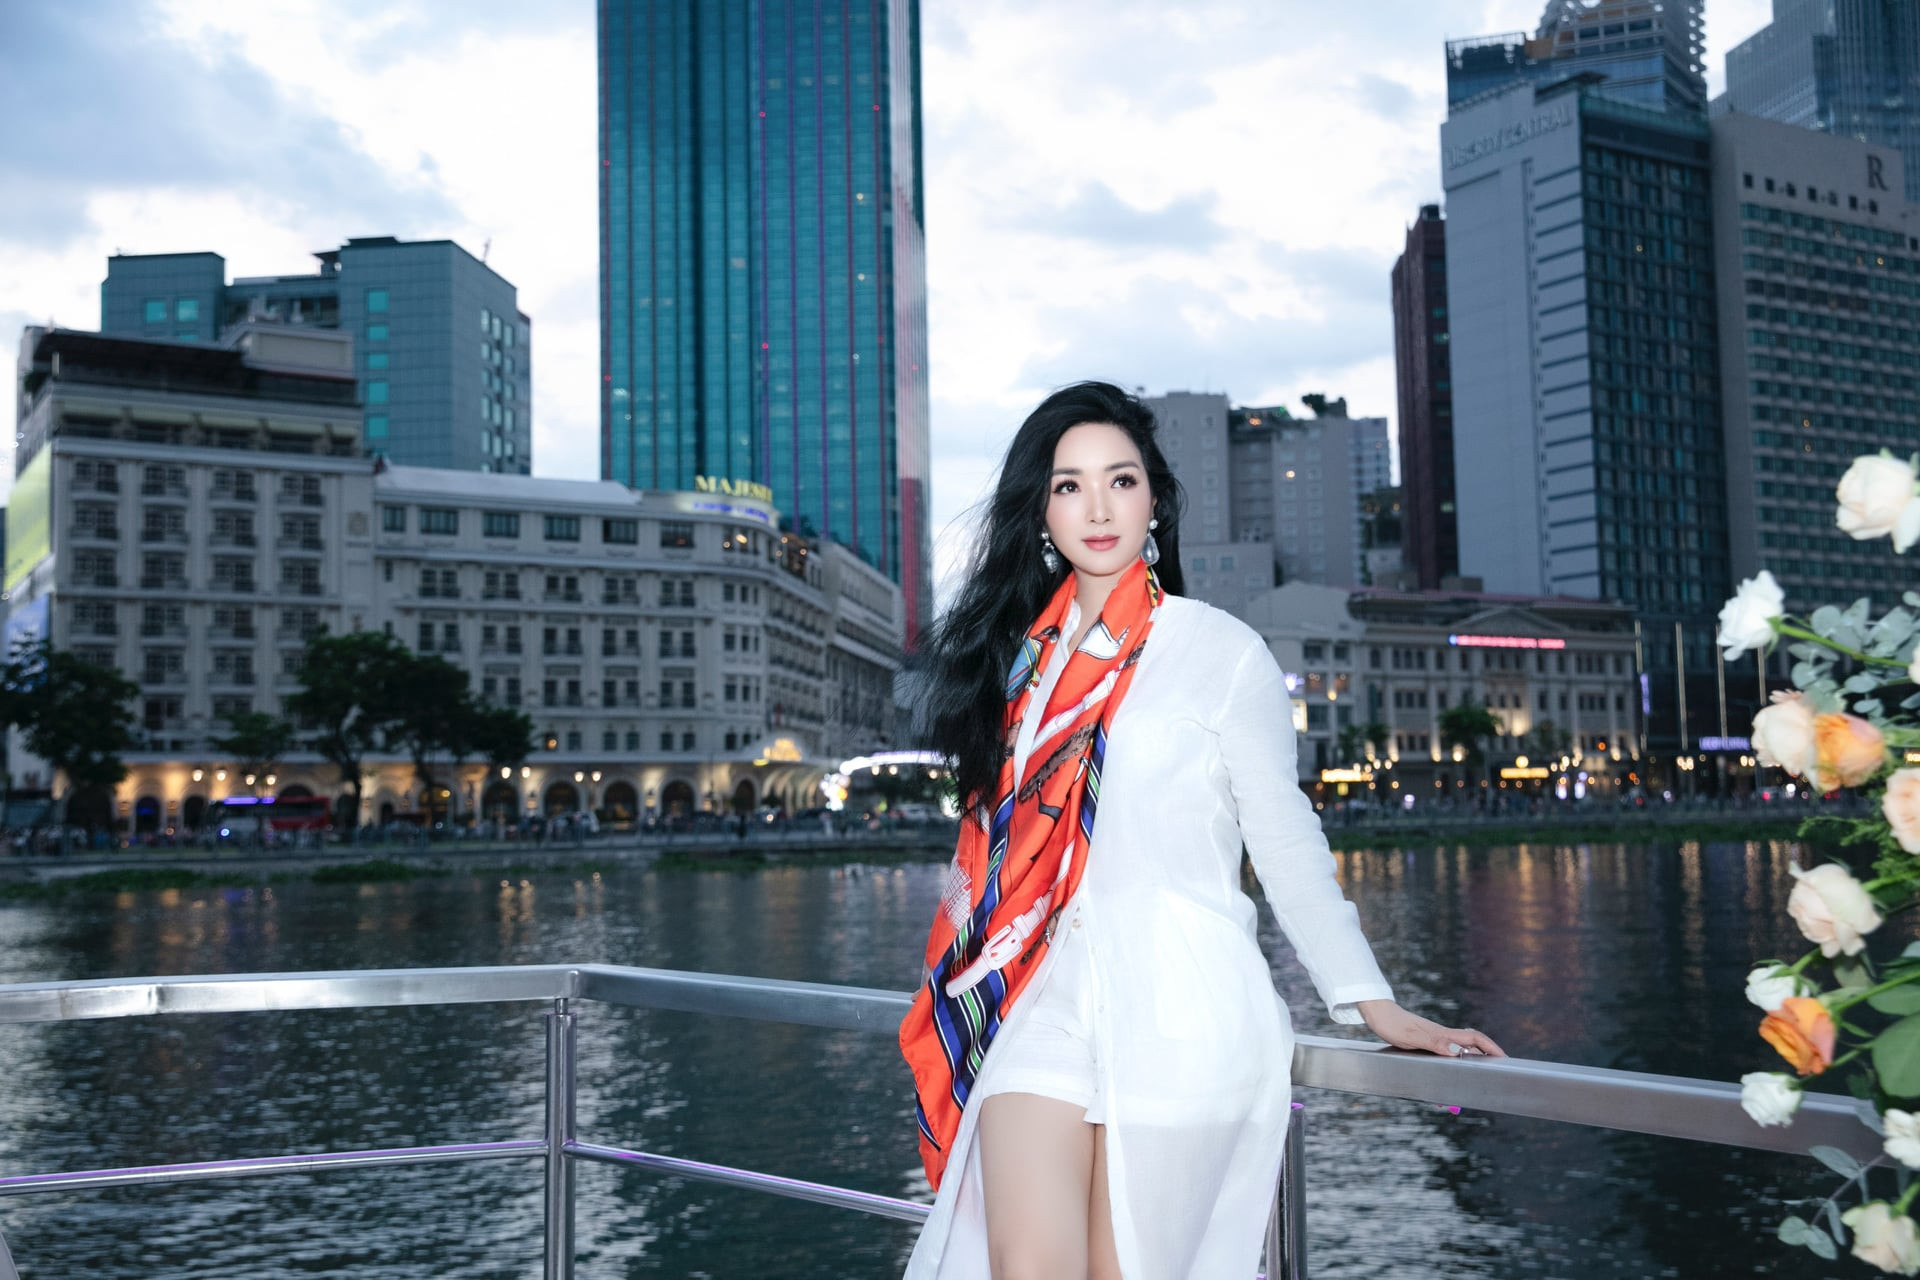 Trên trang cá nhân, Hoa hậu Đền Hùng thường xuyên chia sẻ cuộc sống giàu sang nhưng độc thân